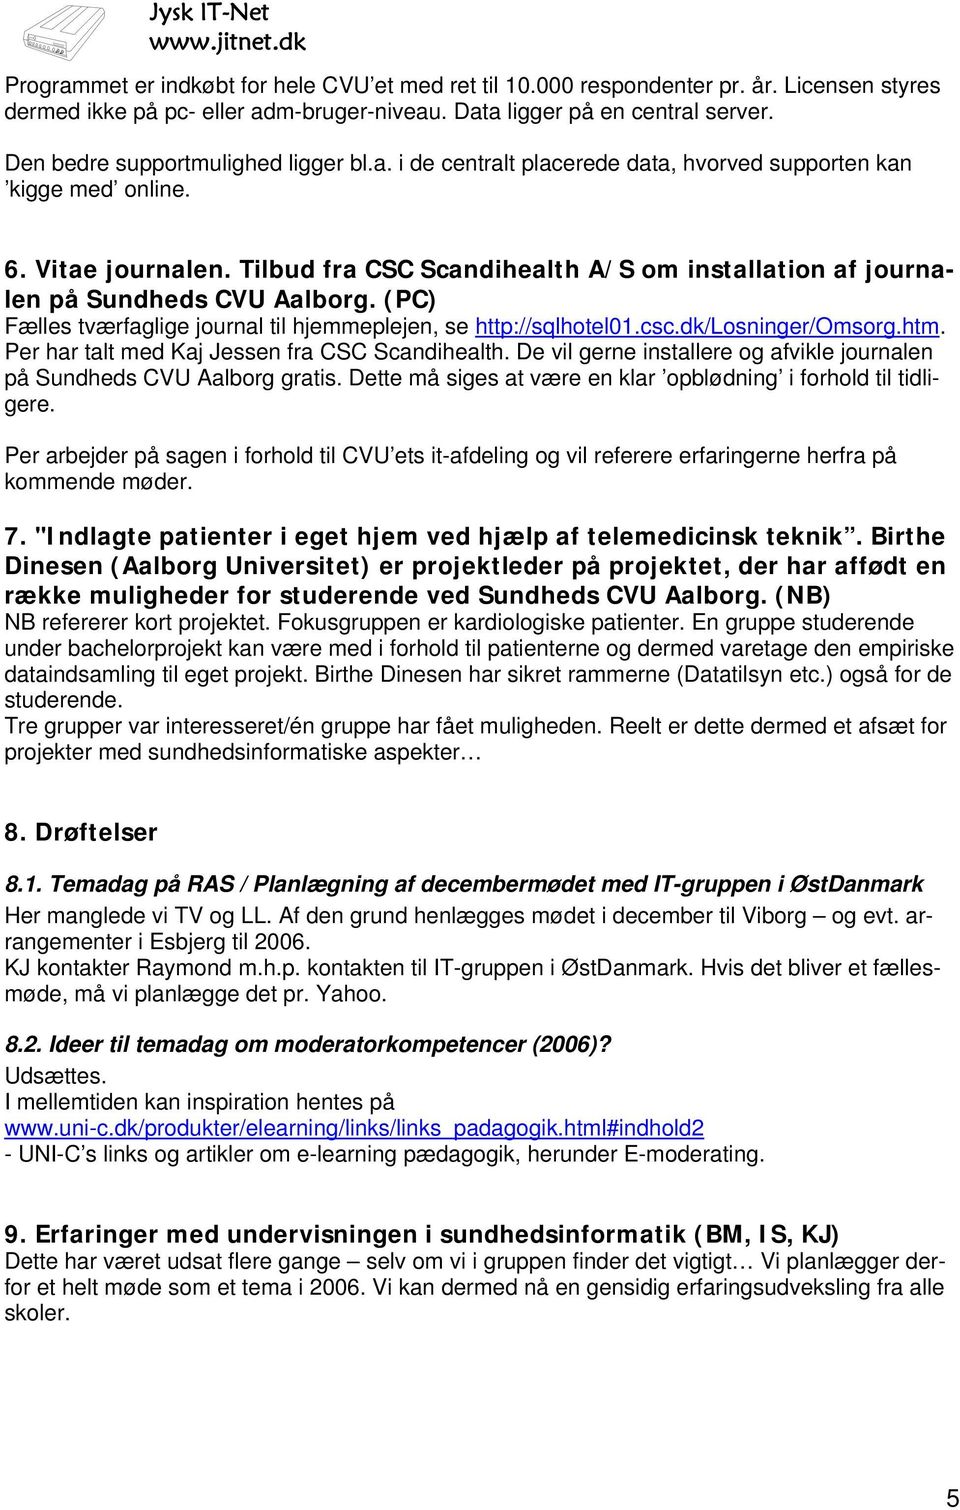 Tilbud fra CSC Scandihealth A/S om installation af journalen på Sundheds CVU Aalborg. (PC) Fælles tværfaglige journal til hjemmeplejen, se http://sqlhotel01.csc.dk/losninger/omsorg.htm.